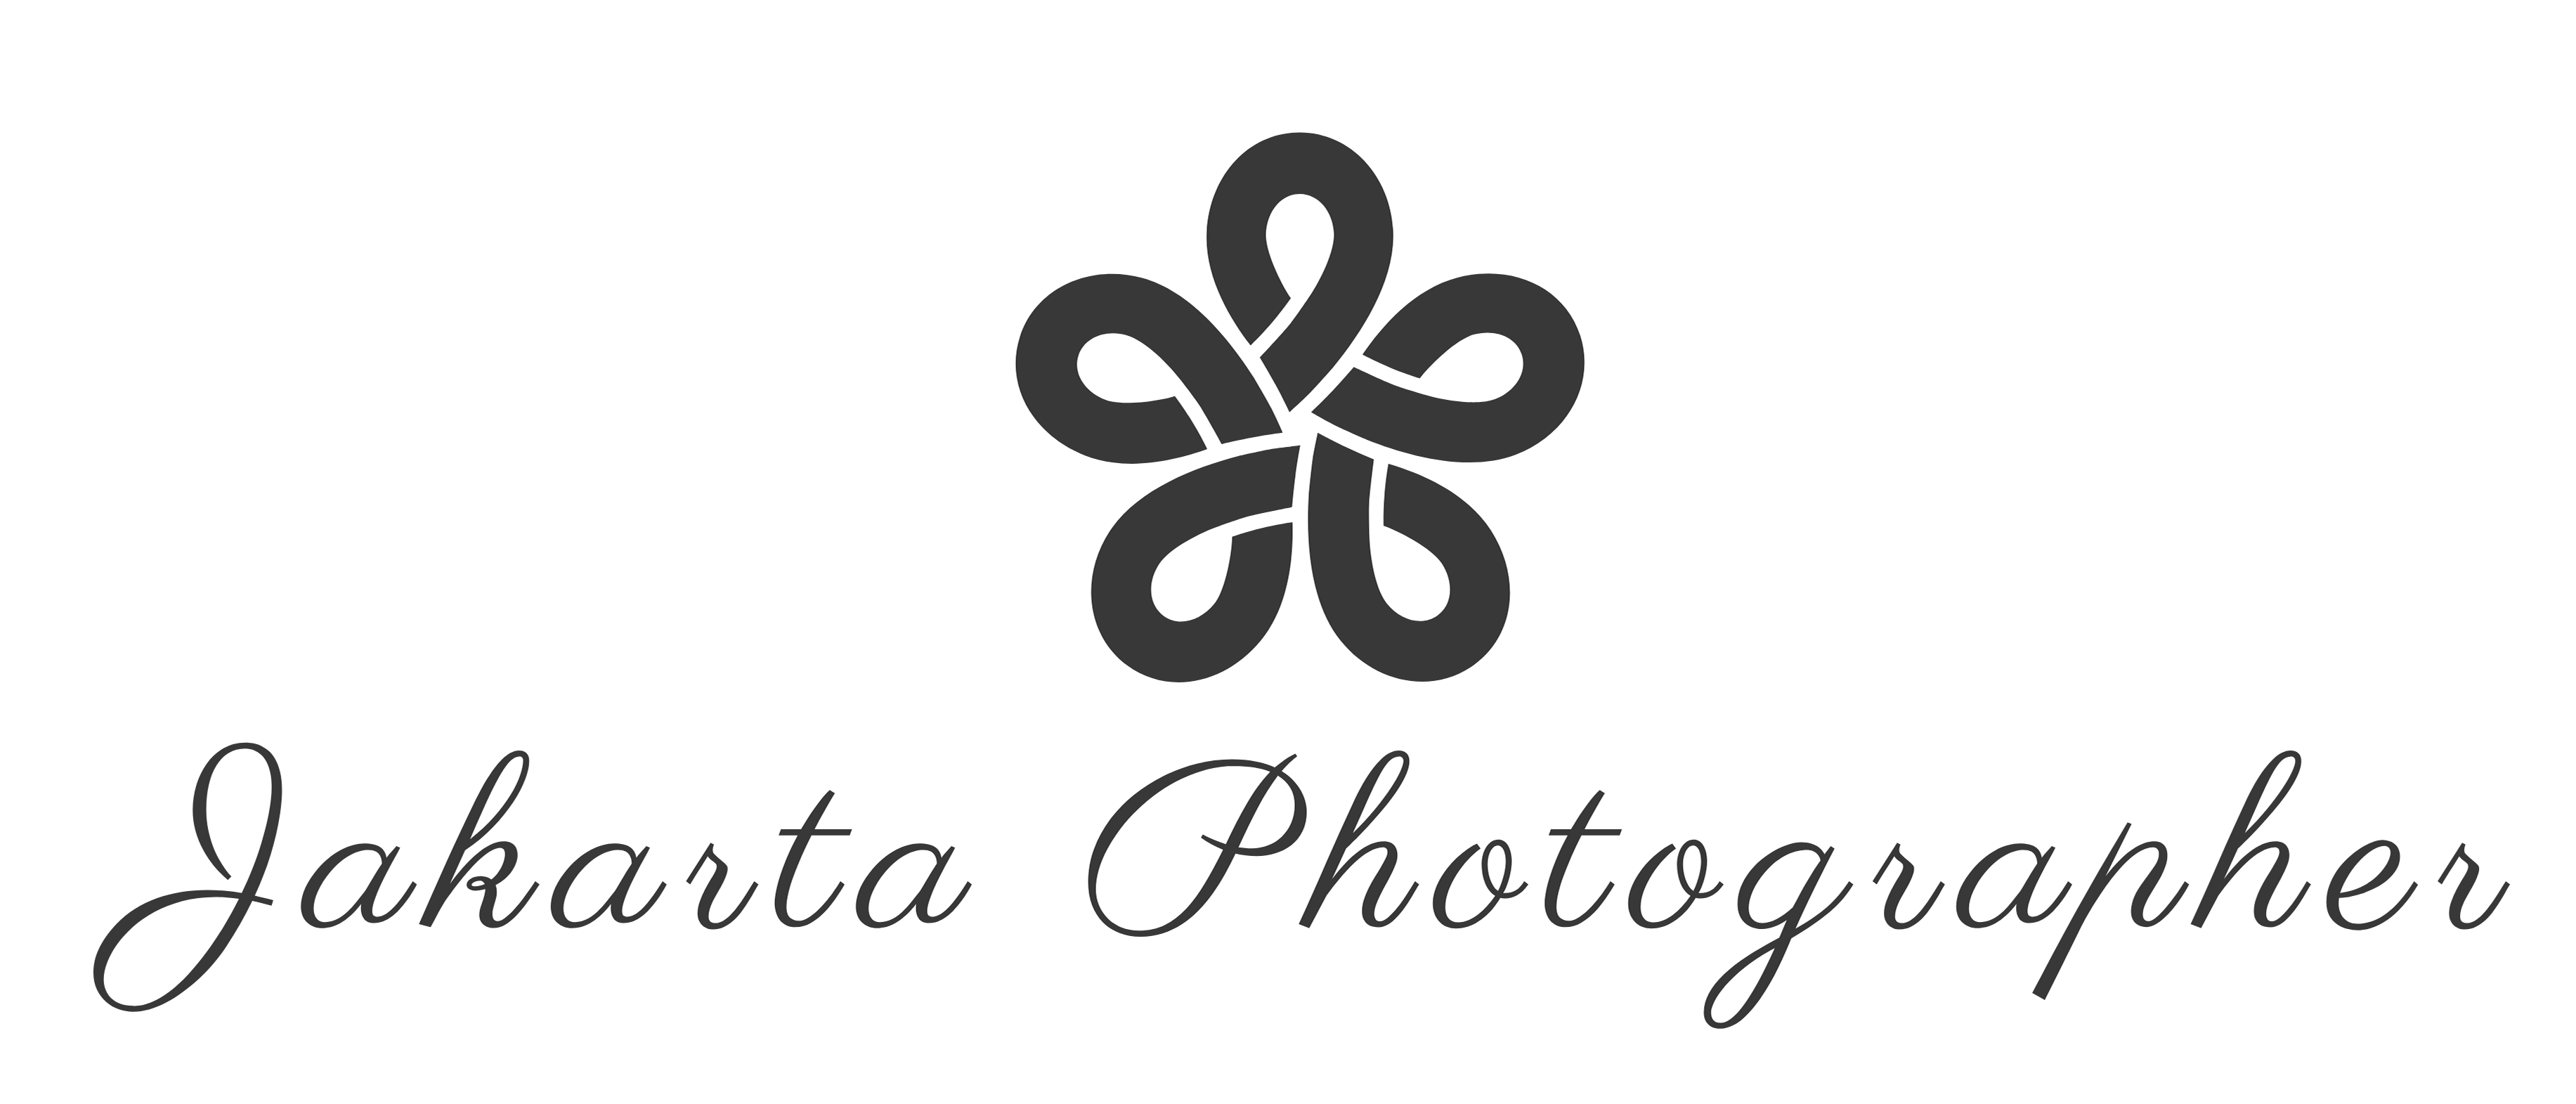 Jakarta Photographer